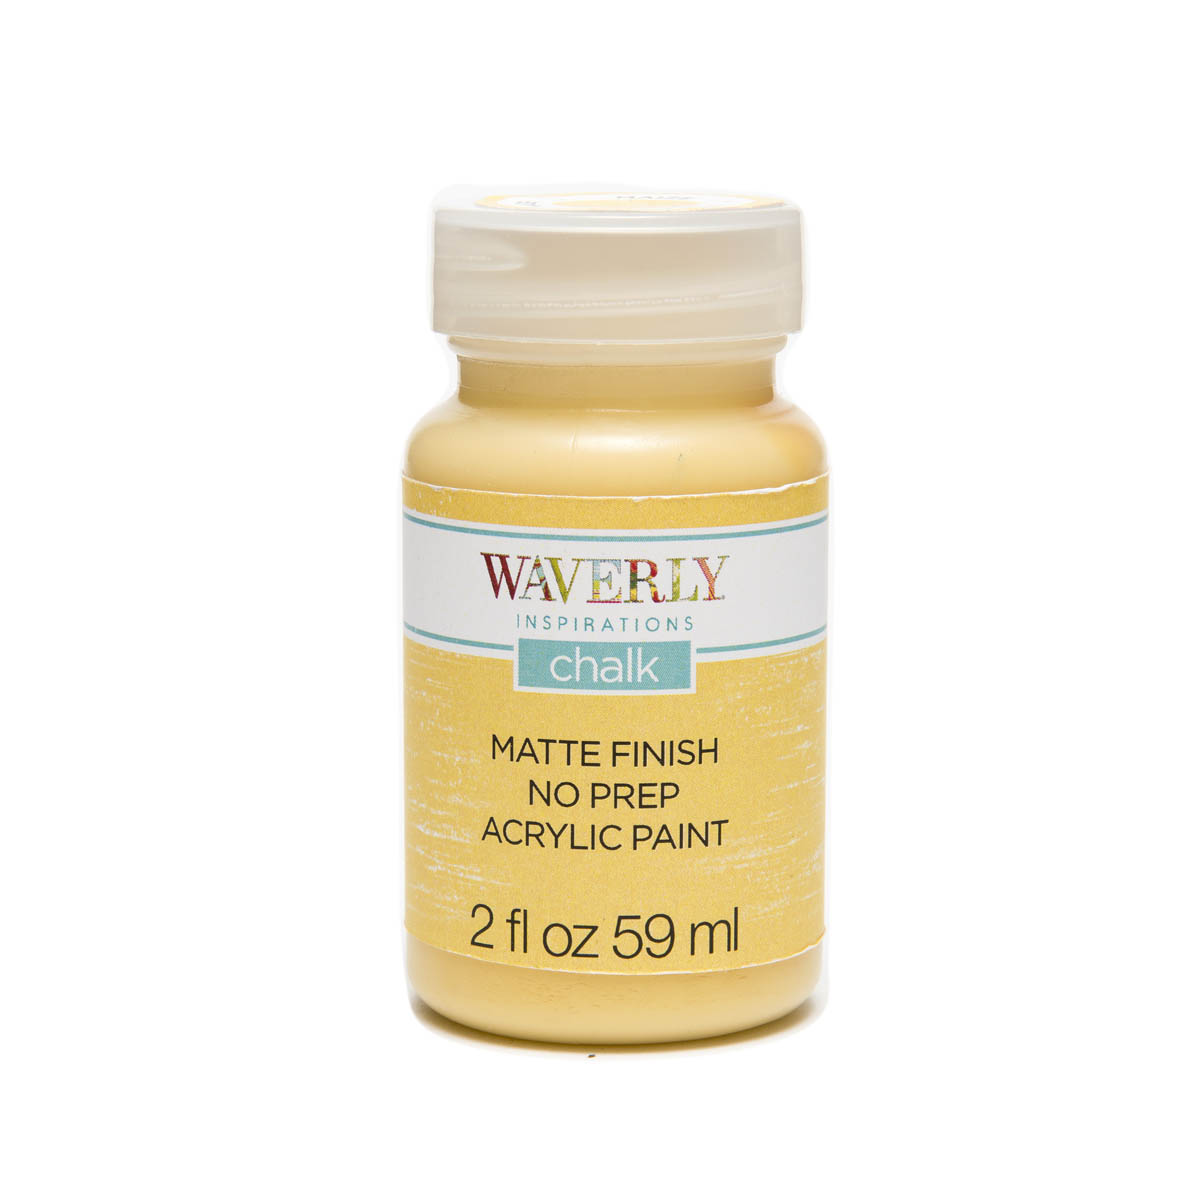 Waverly ® Inspirations Chalk Finish Acrylic Paint - Maize, 2 oz. - 60884E